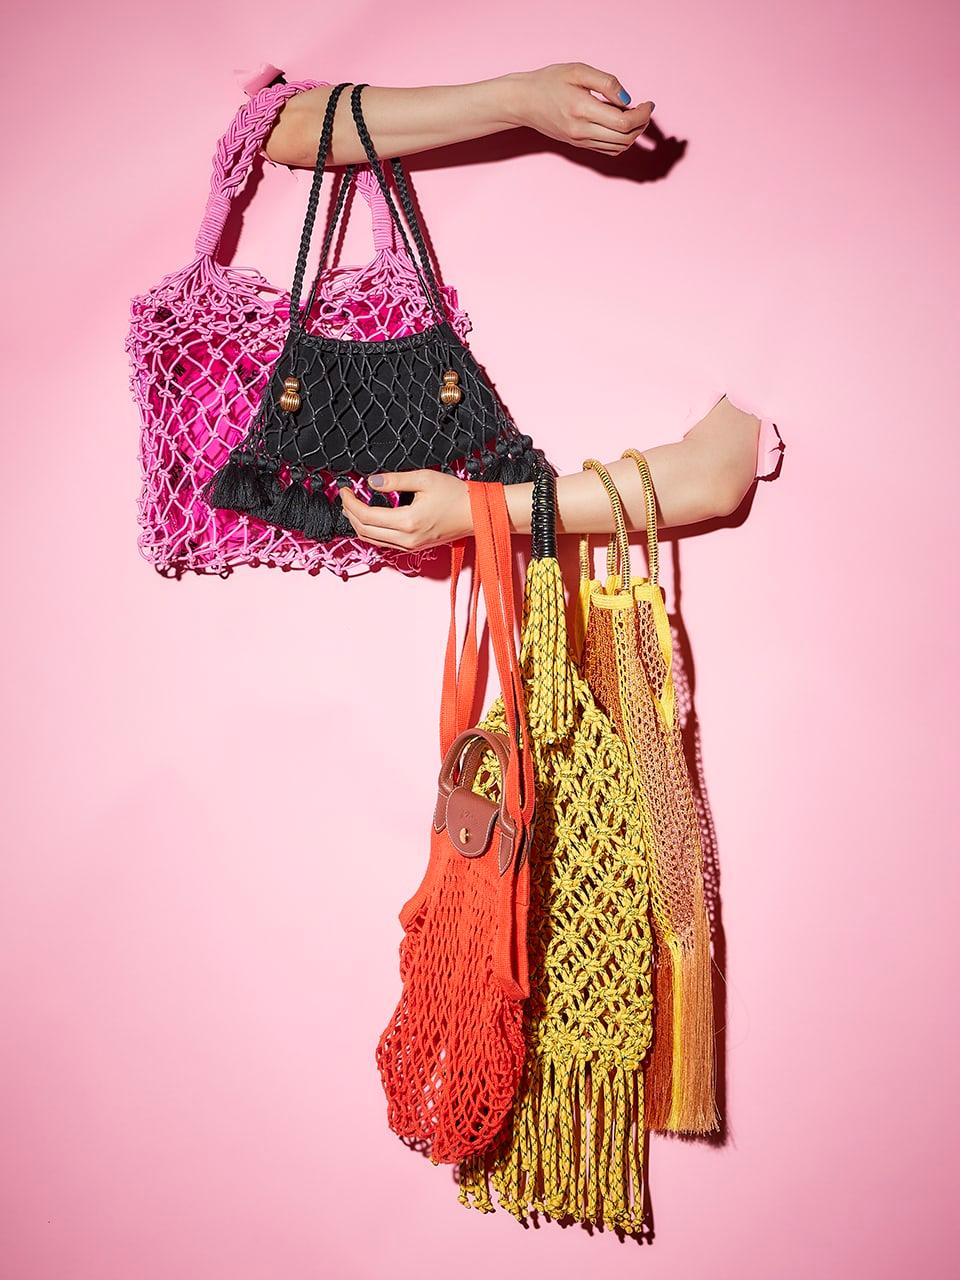 夏に向けて取り入れたい爽やかなアイテム。編み方や素材に工夫を凝らしたネットバッグ